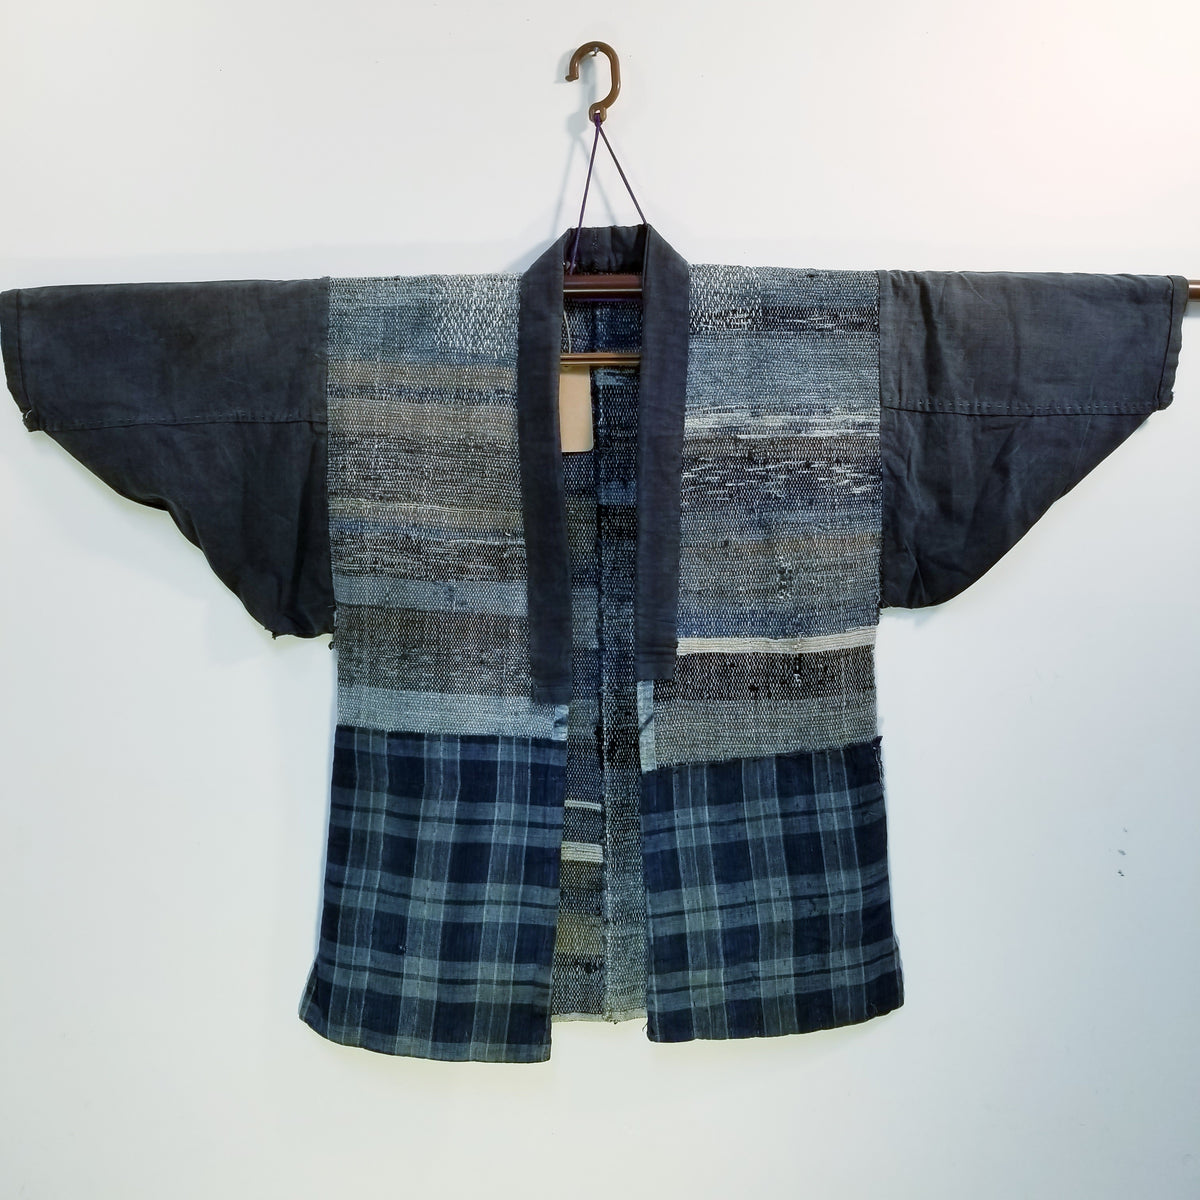 Sakiori Sashiko Noragi Farmer Jacket – Mukashinoboro